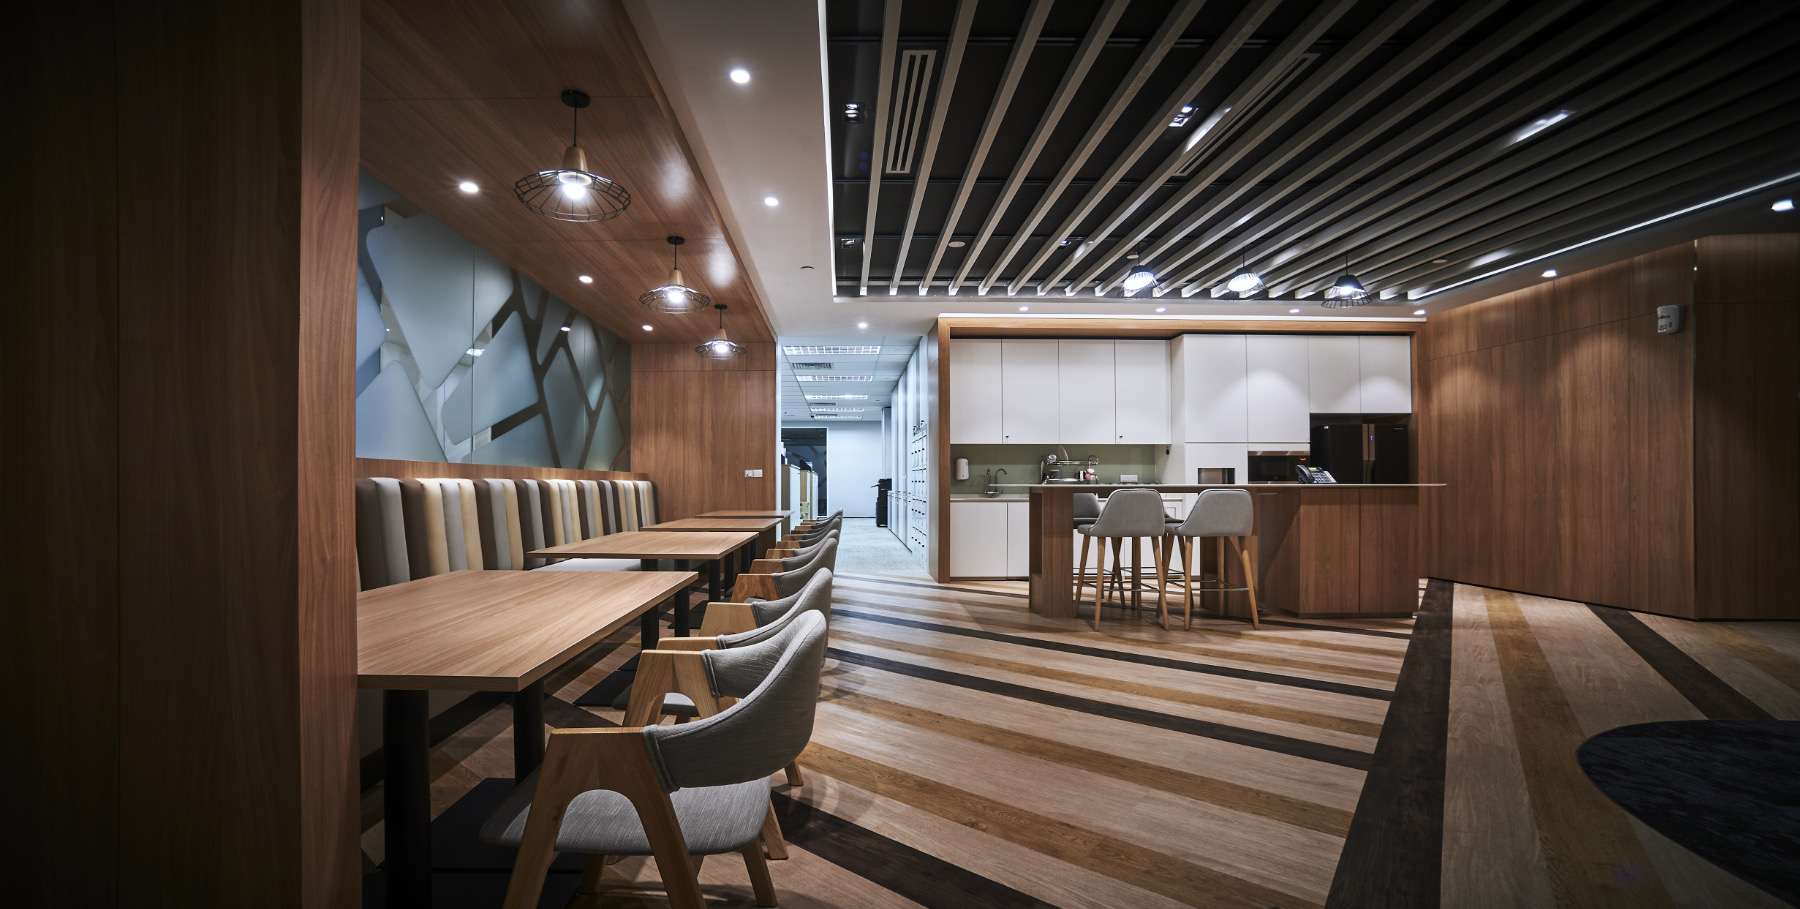 【トロピカーナコーポレーションのオフィスデザイン】- マレーシア, ペタリンジャヤのカフェスペース